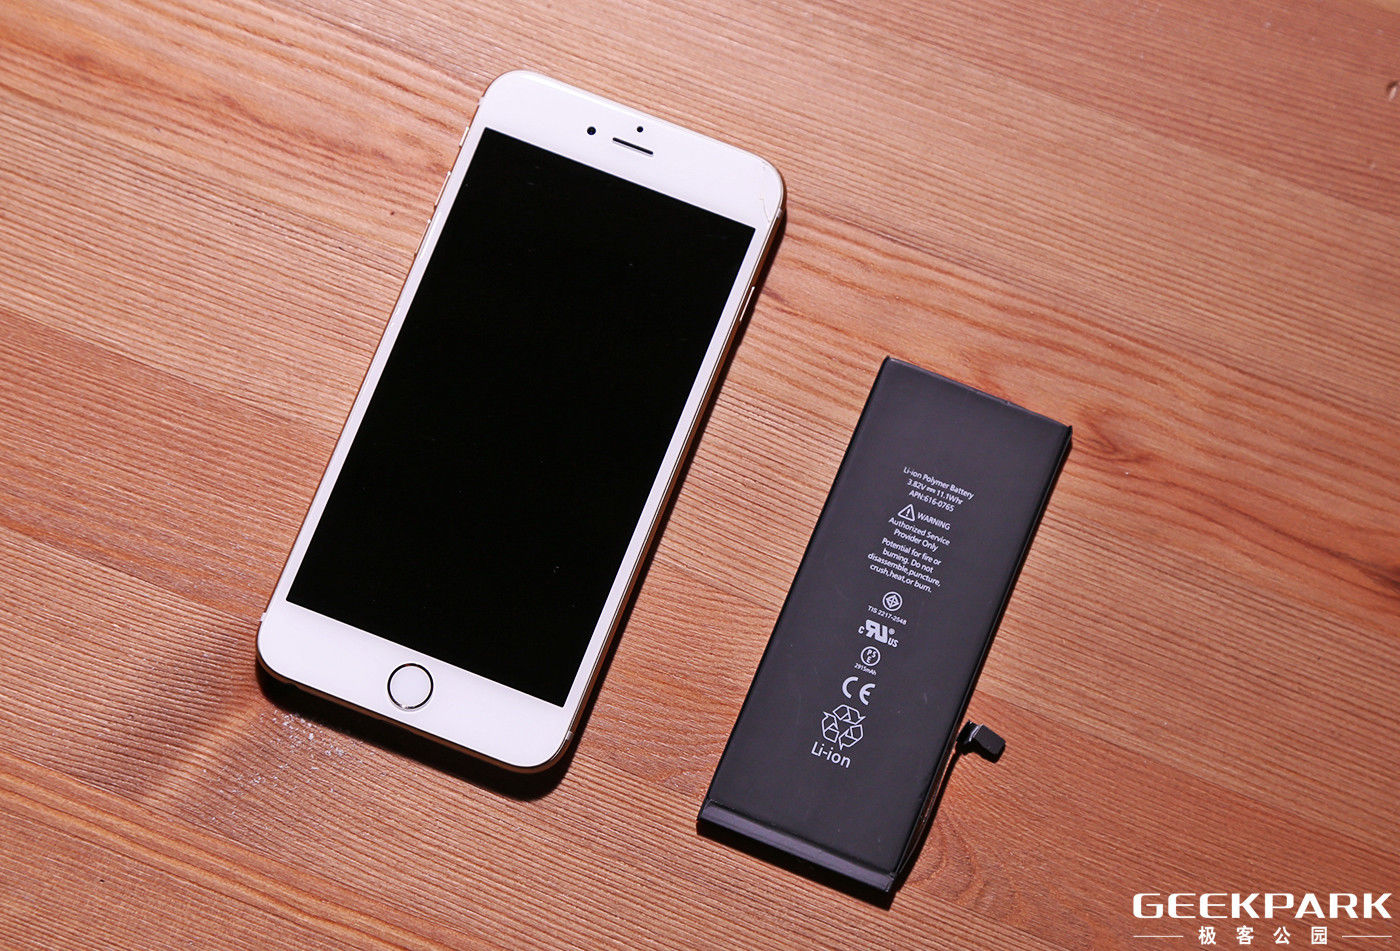 为 iPhone 更换新电池能否让它变得更快?